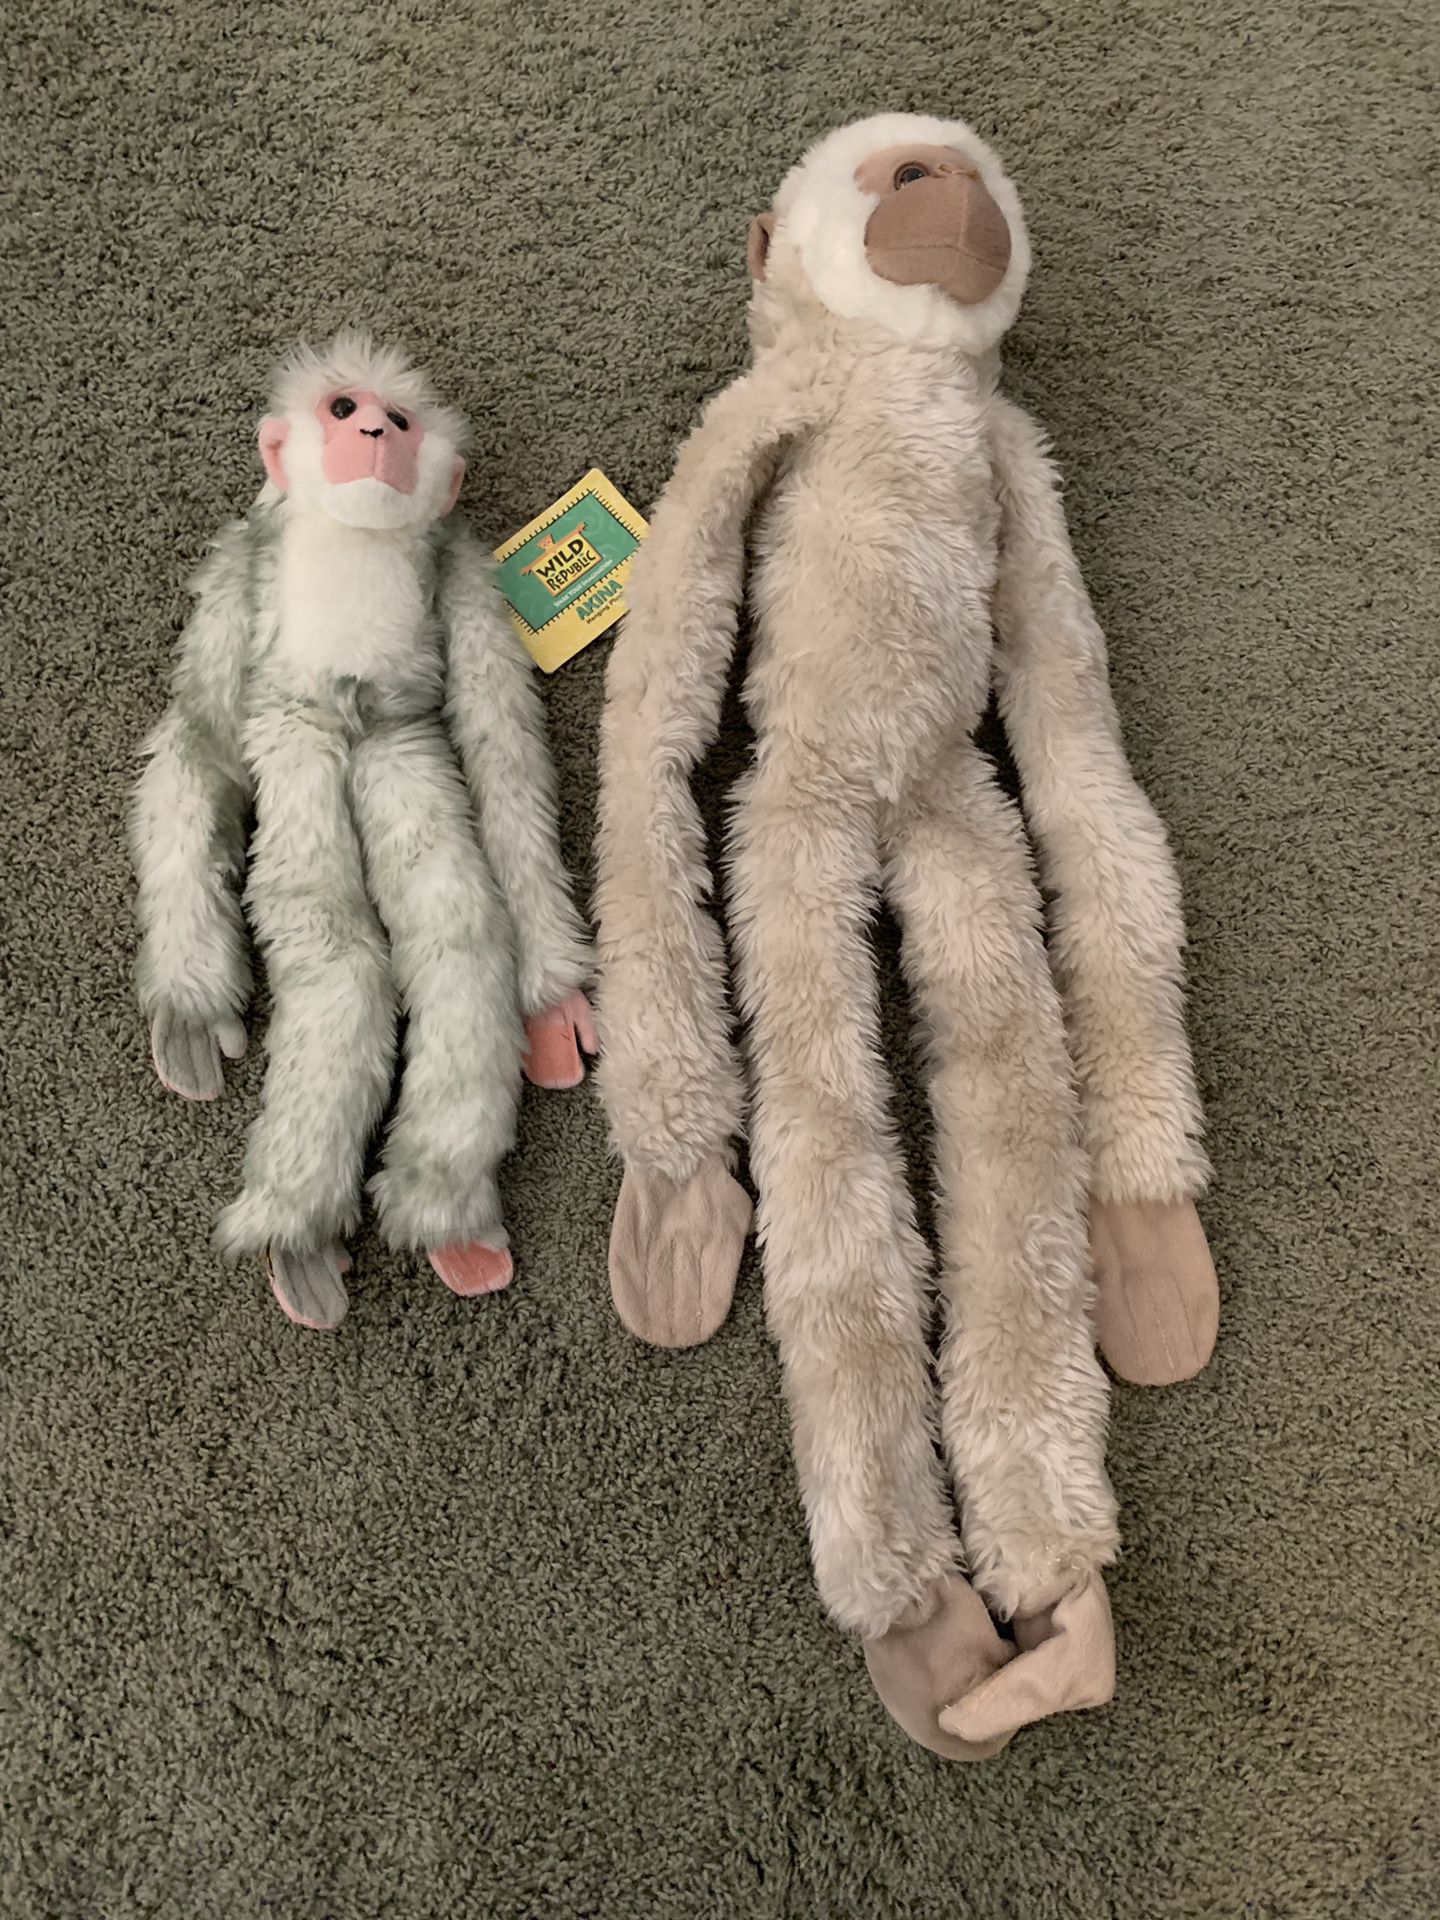 Stuffed monkey toys